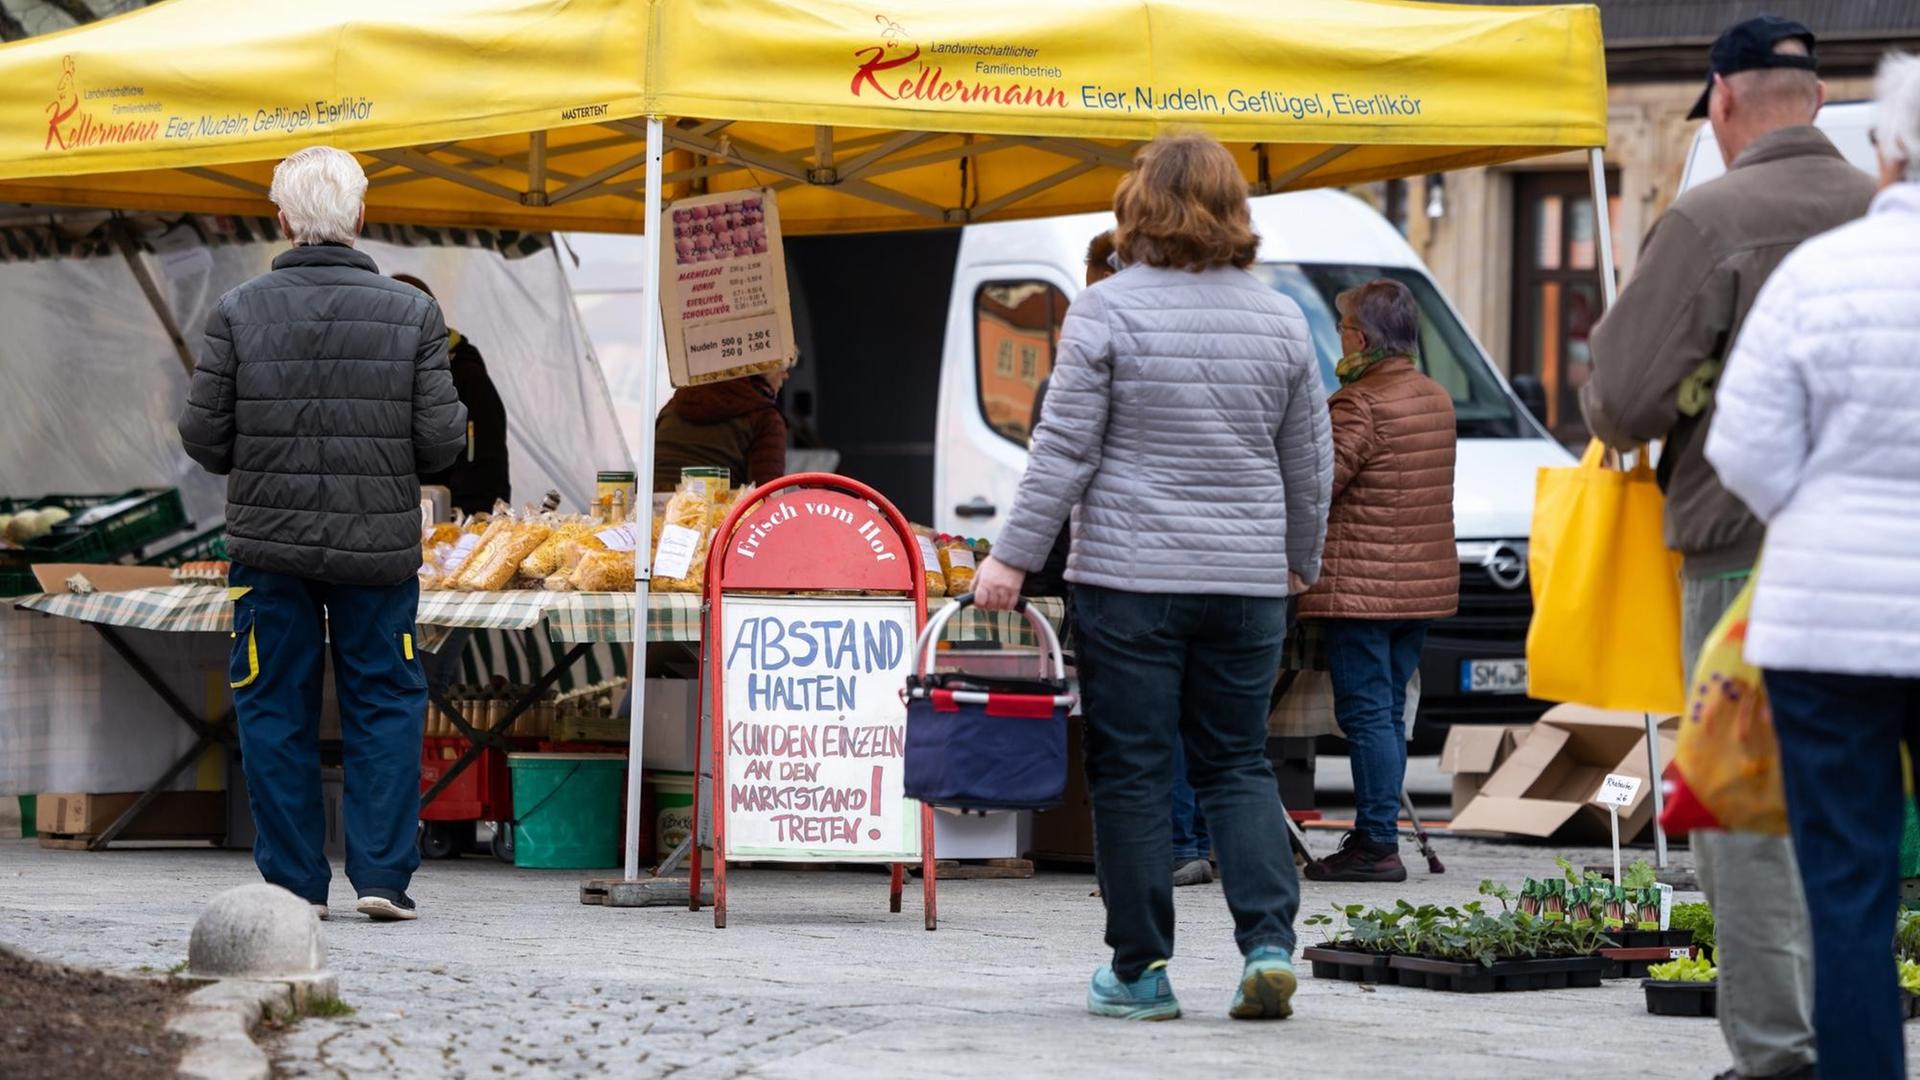 Ein Schild mit der Aufschrift "Abstand halten" steht vor einem Marktstand auf einem Wochenmarkt.